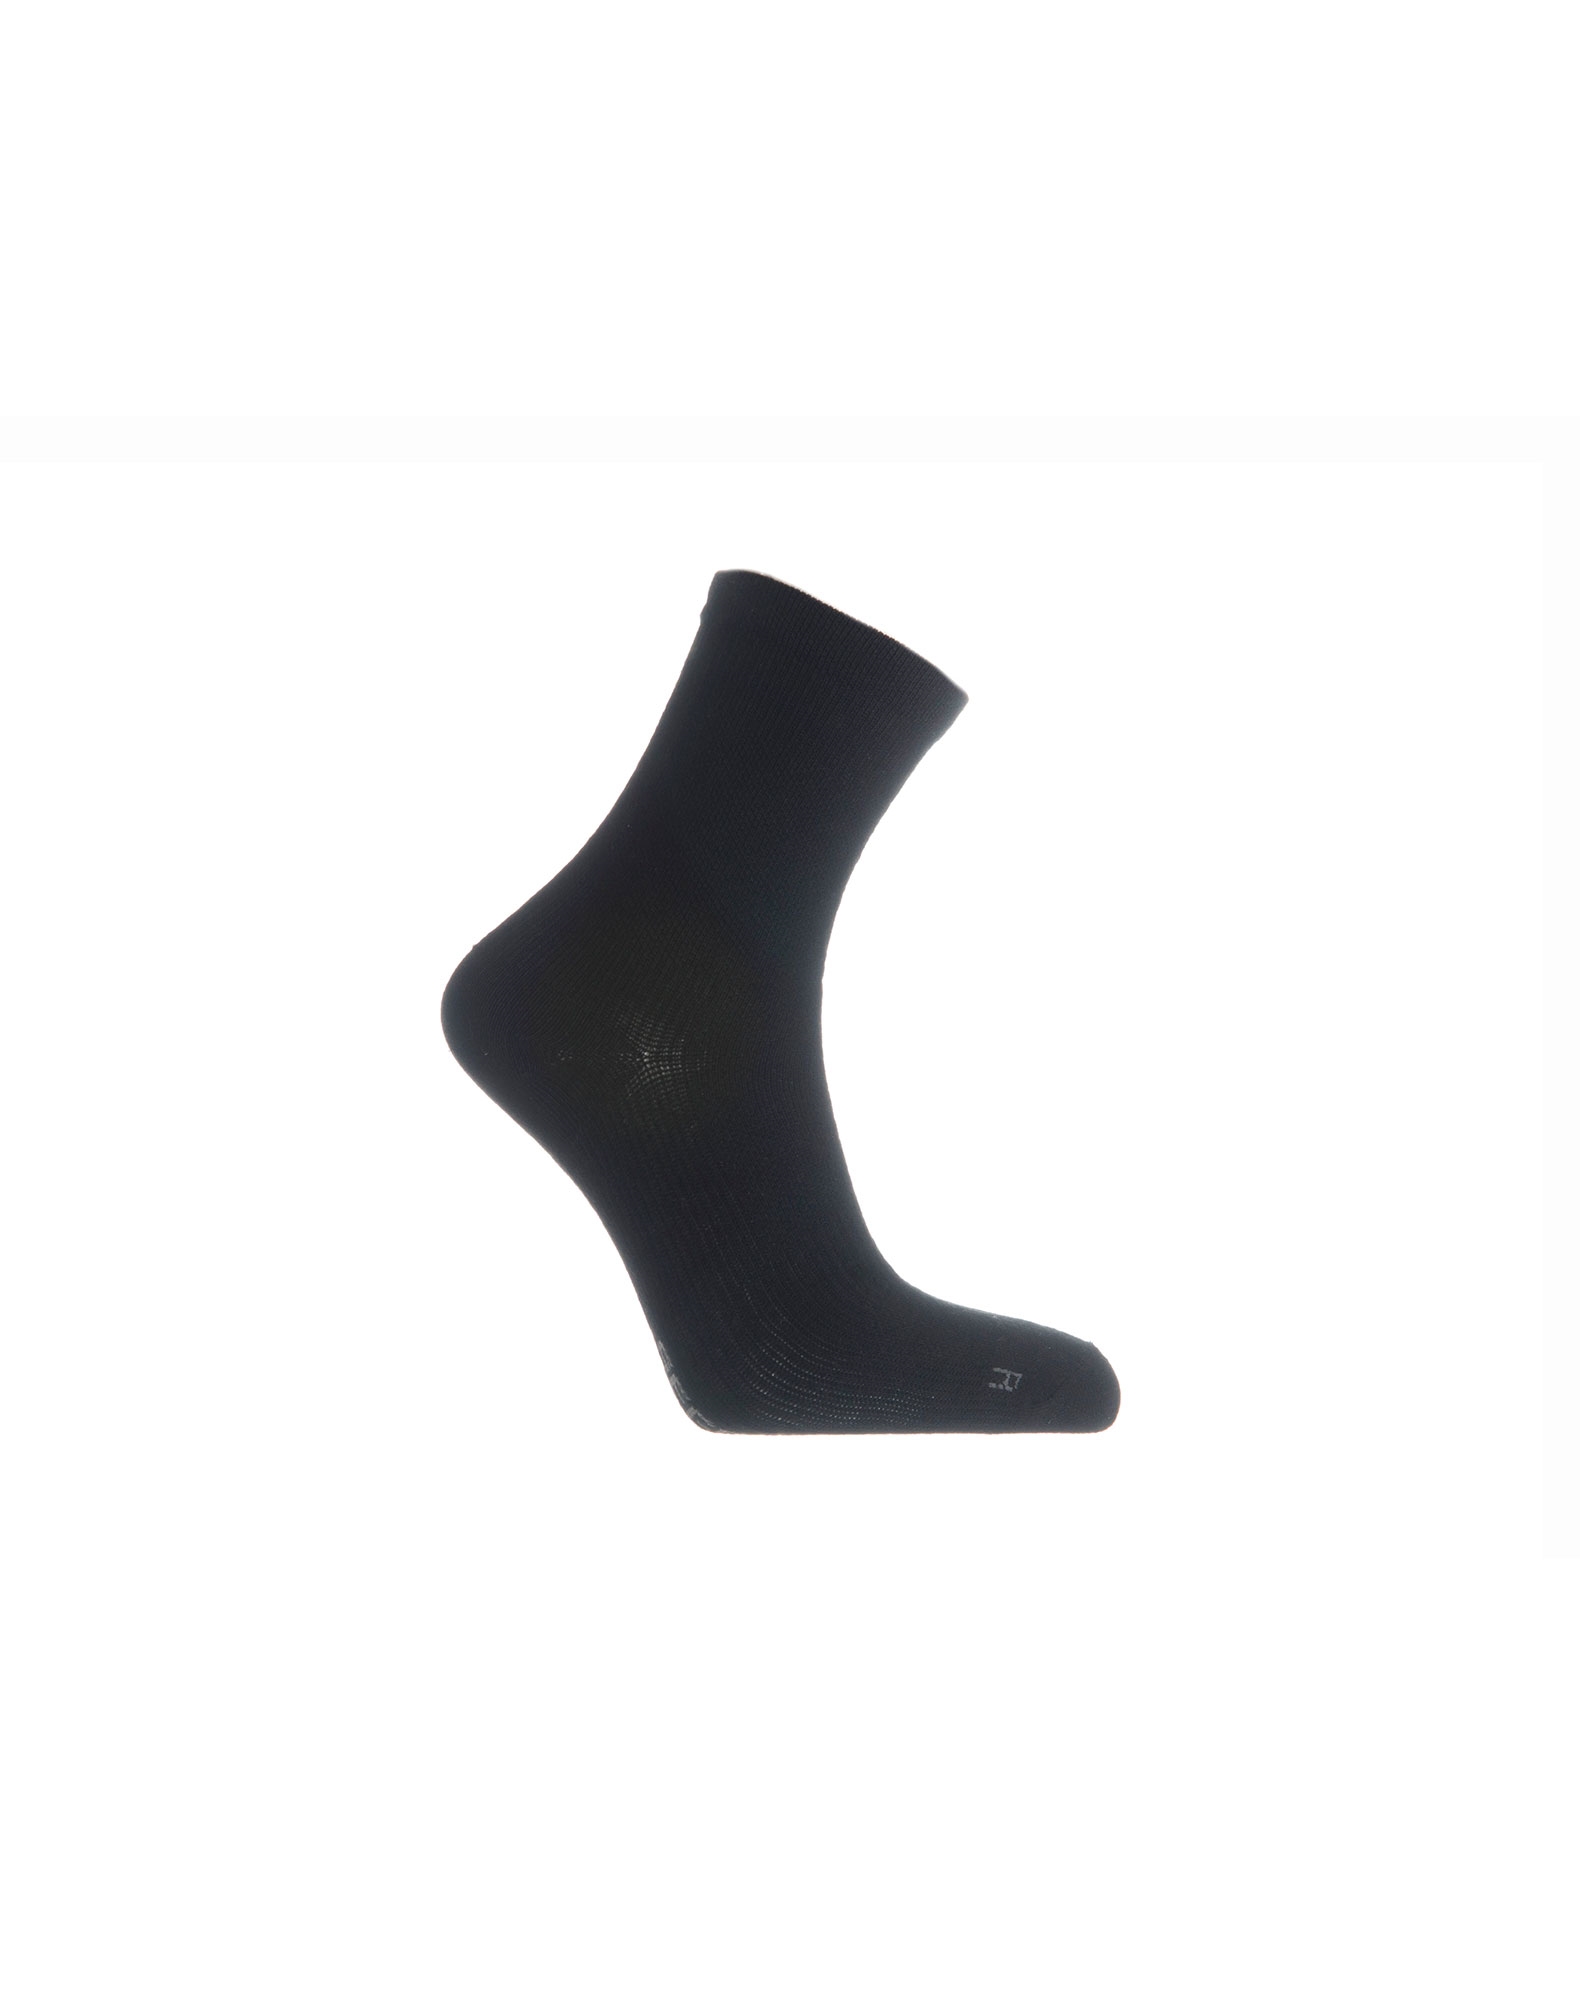 at styre plade skæg Køb Seger Coolmax Basic sokker til unisex i sort